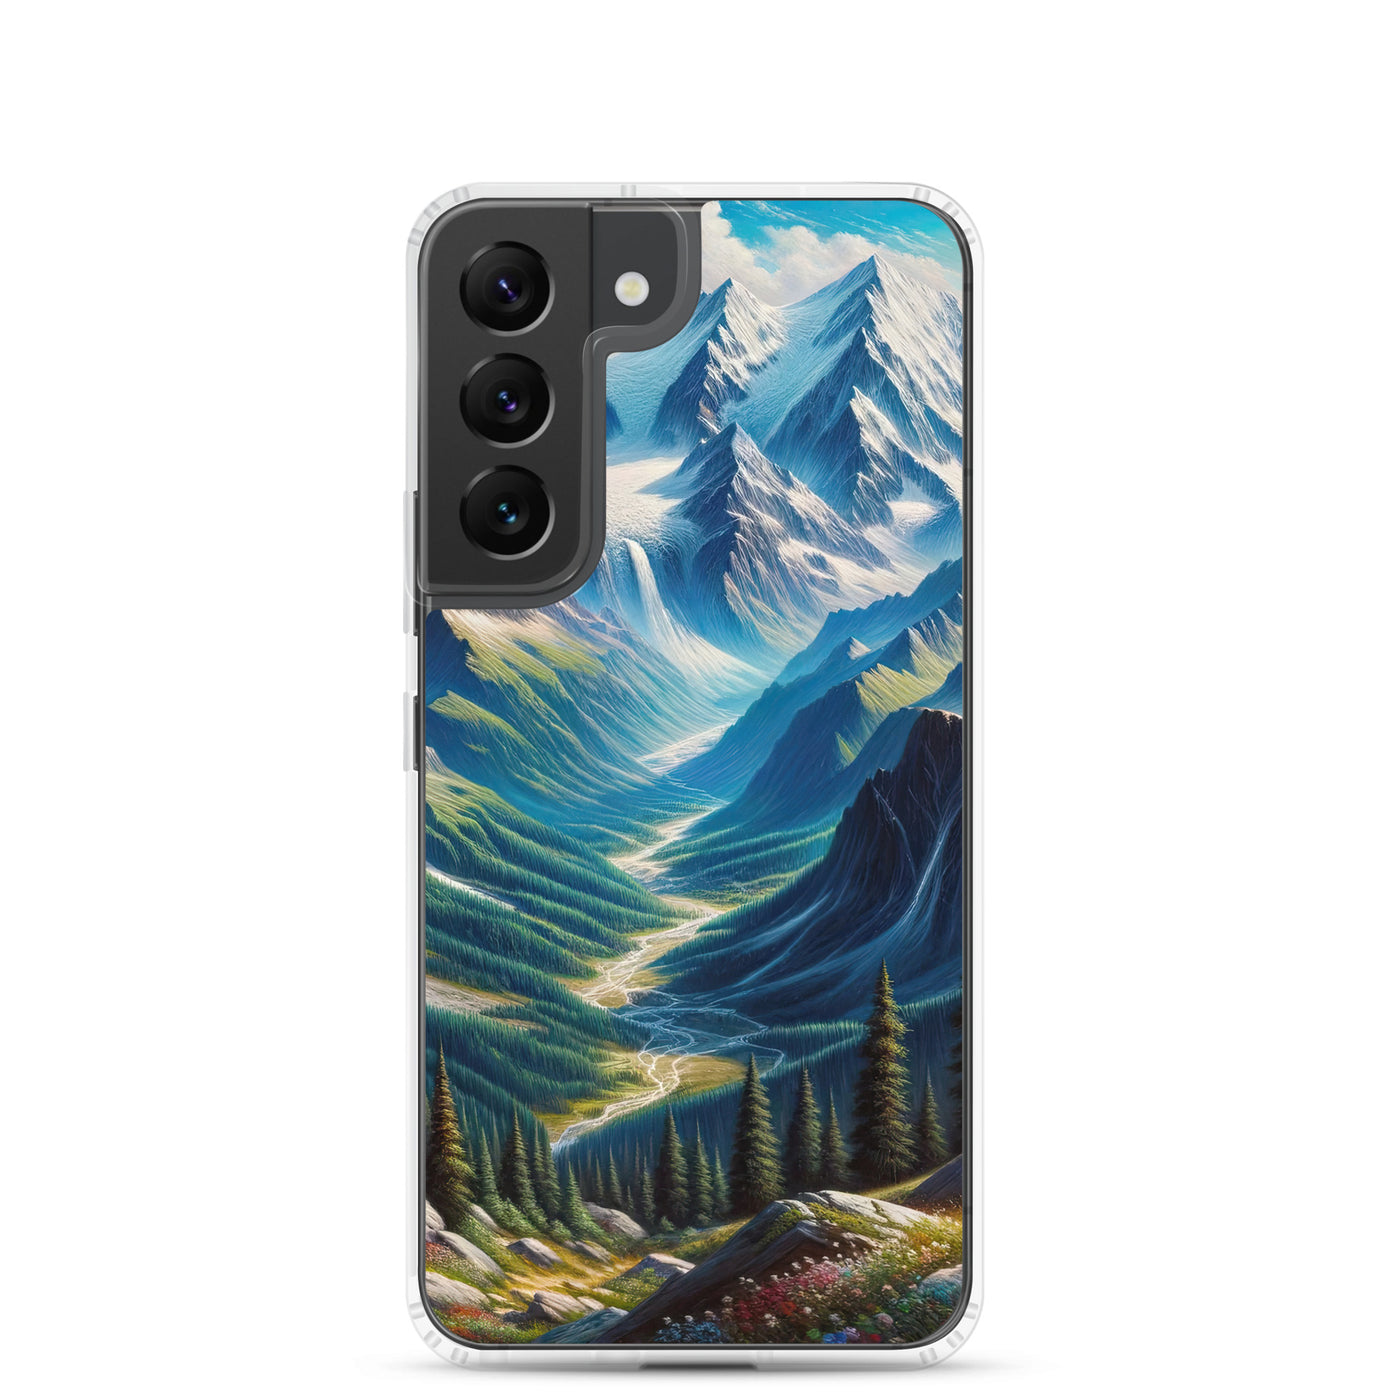 Panorama-Ölgemälde der Alpen mit schneebedeckten Gipfeln und schlängelnden Flusstälern - Samsung Schutzhülle (durchsichtig) berge xxx yyy zzz Samsung Galaxy S22